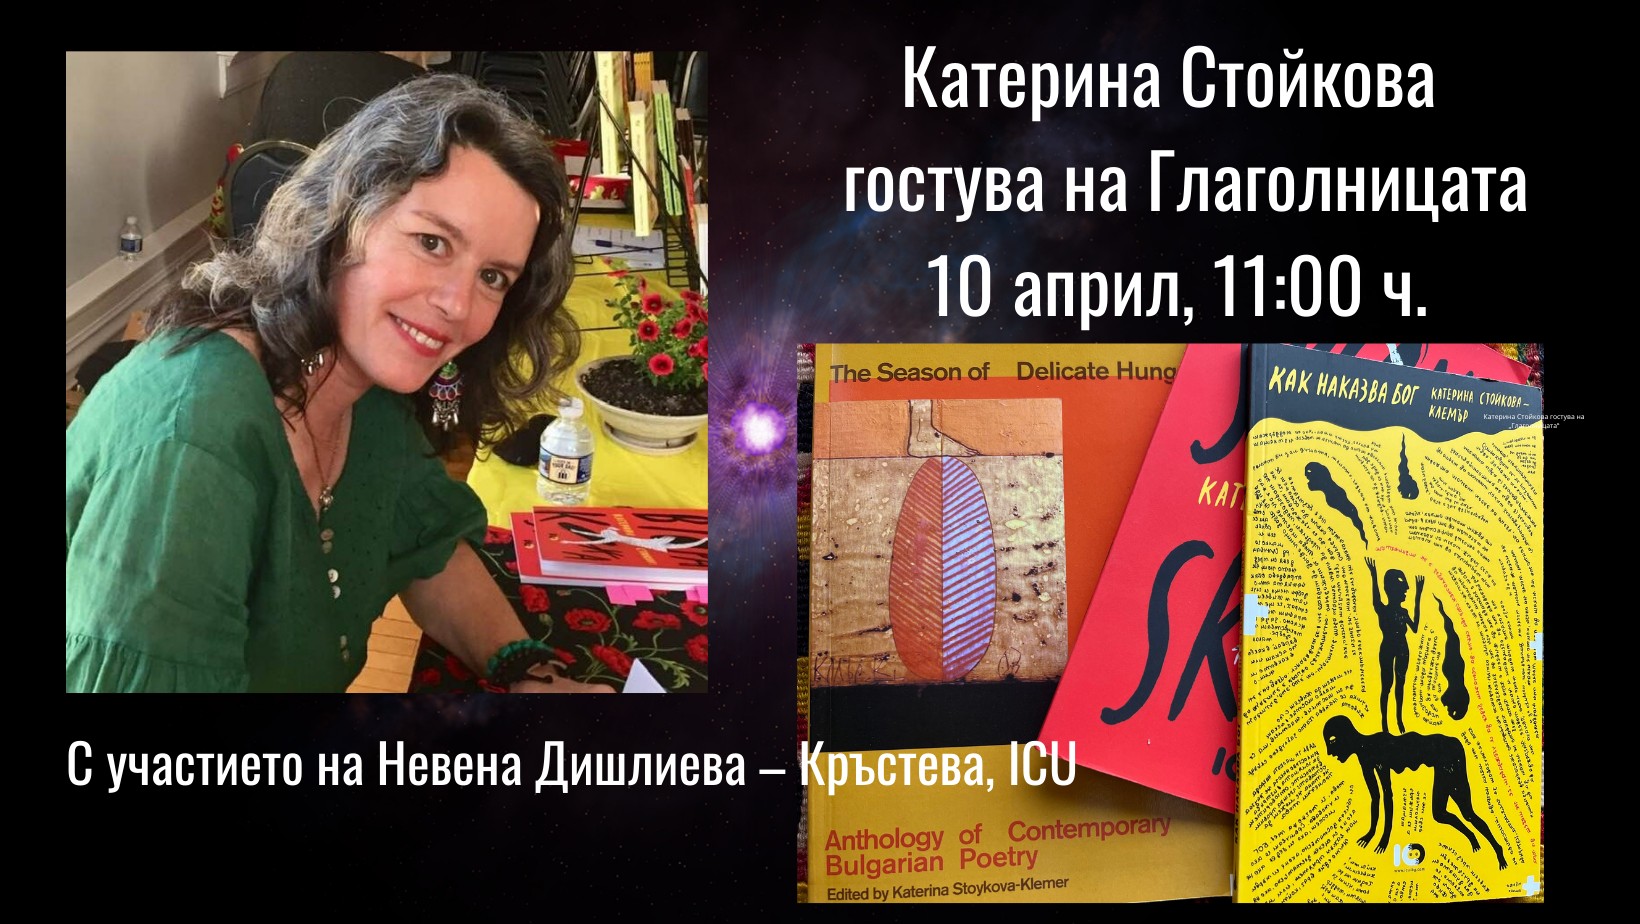 Катерина Стойкова гостува на Глаголницата